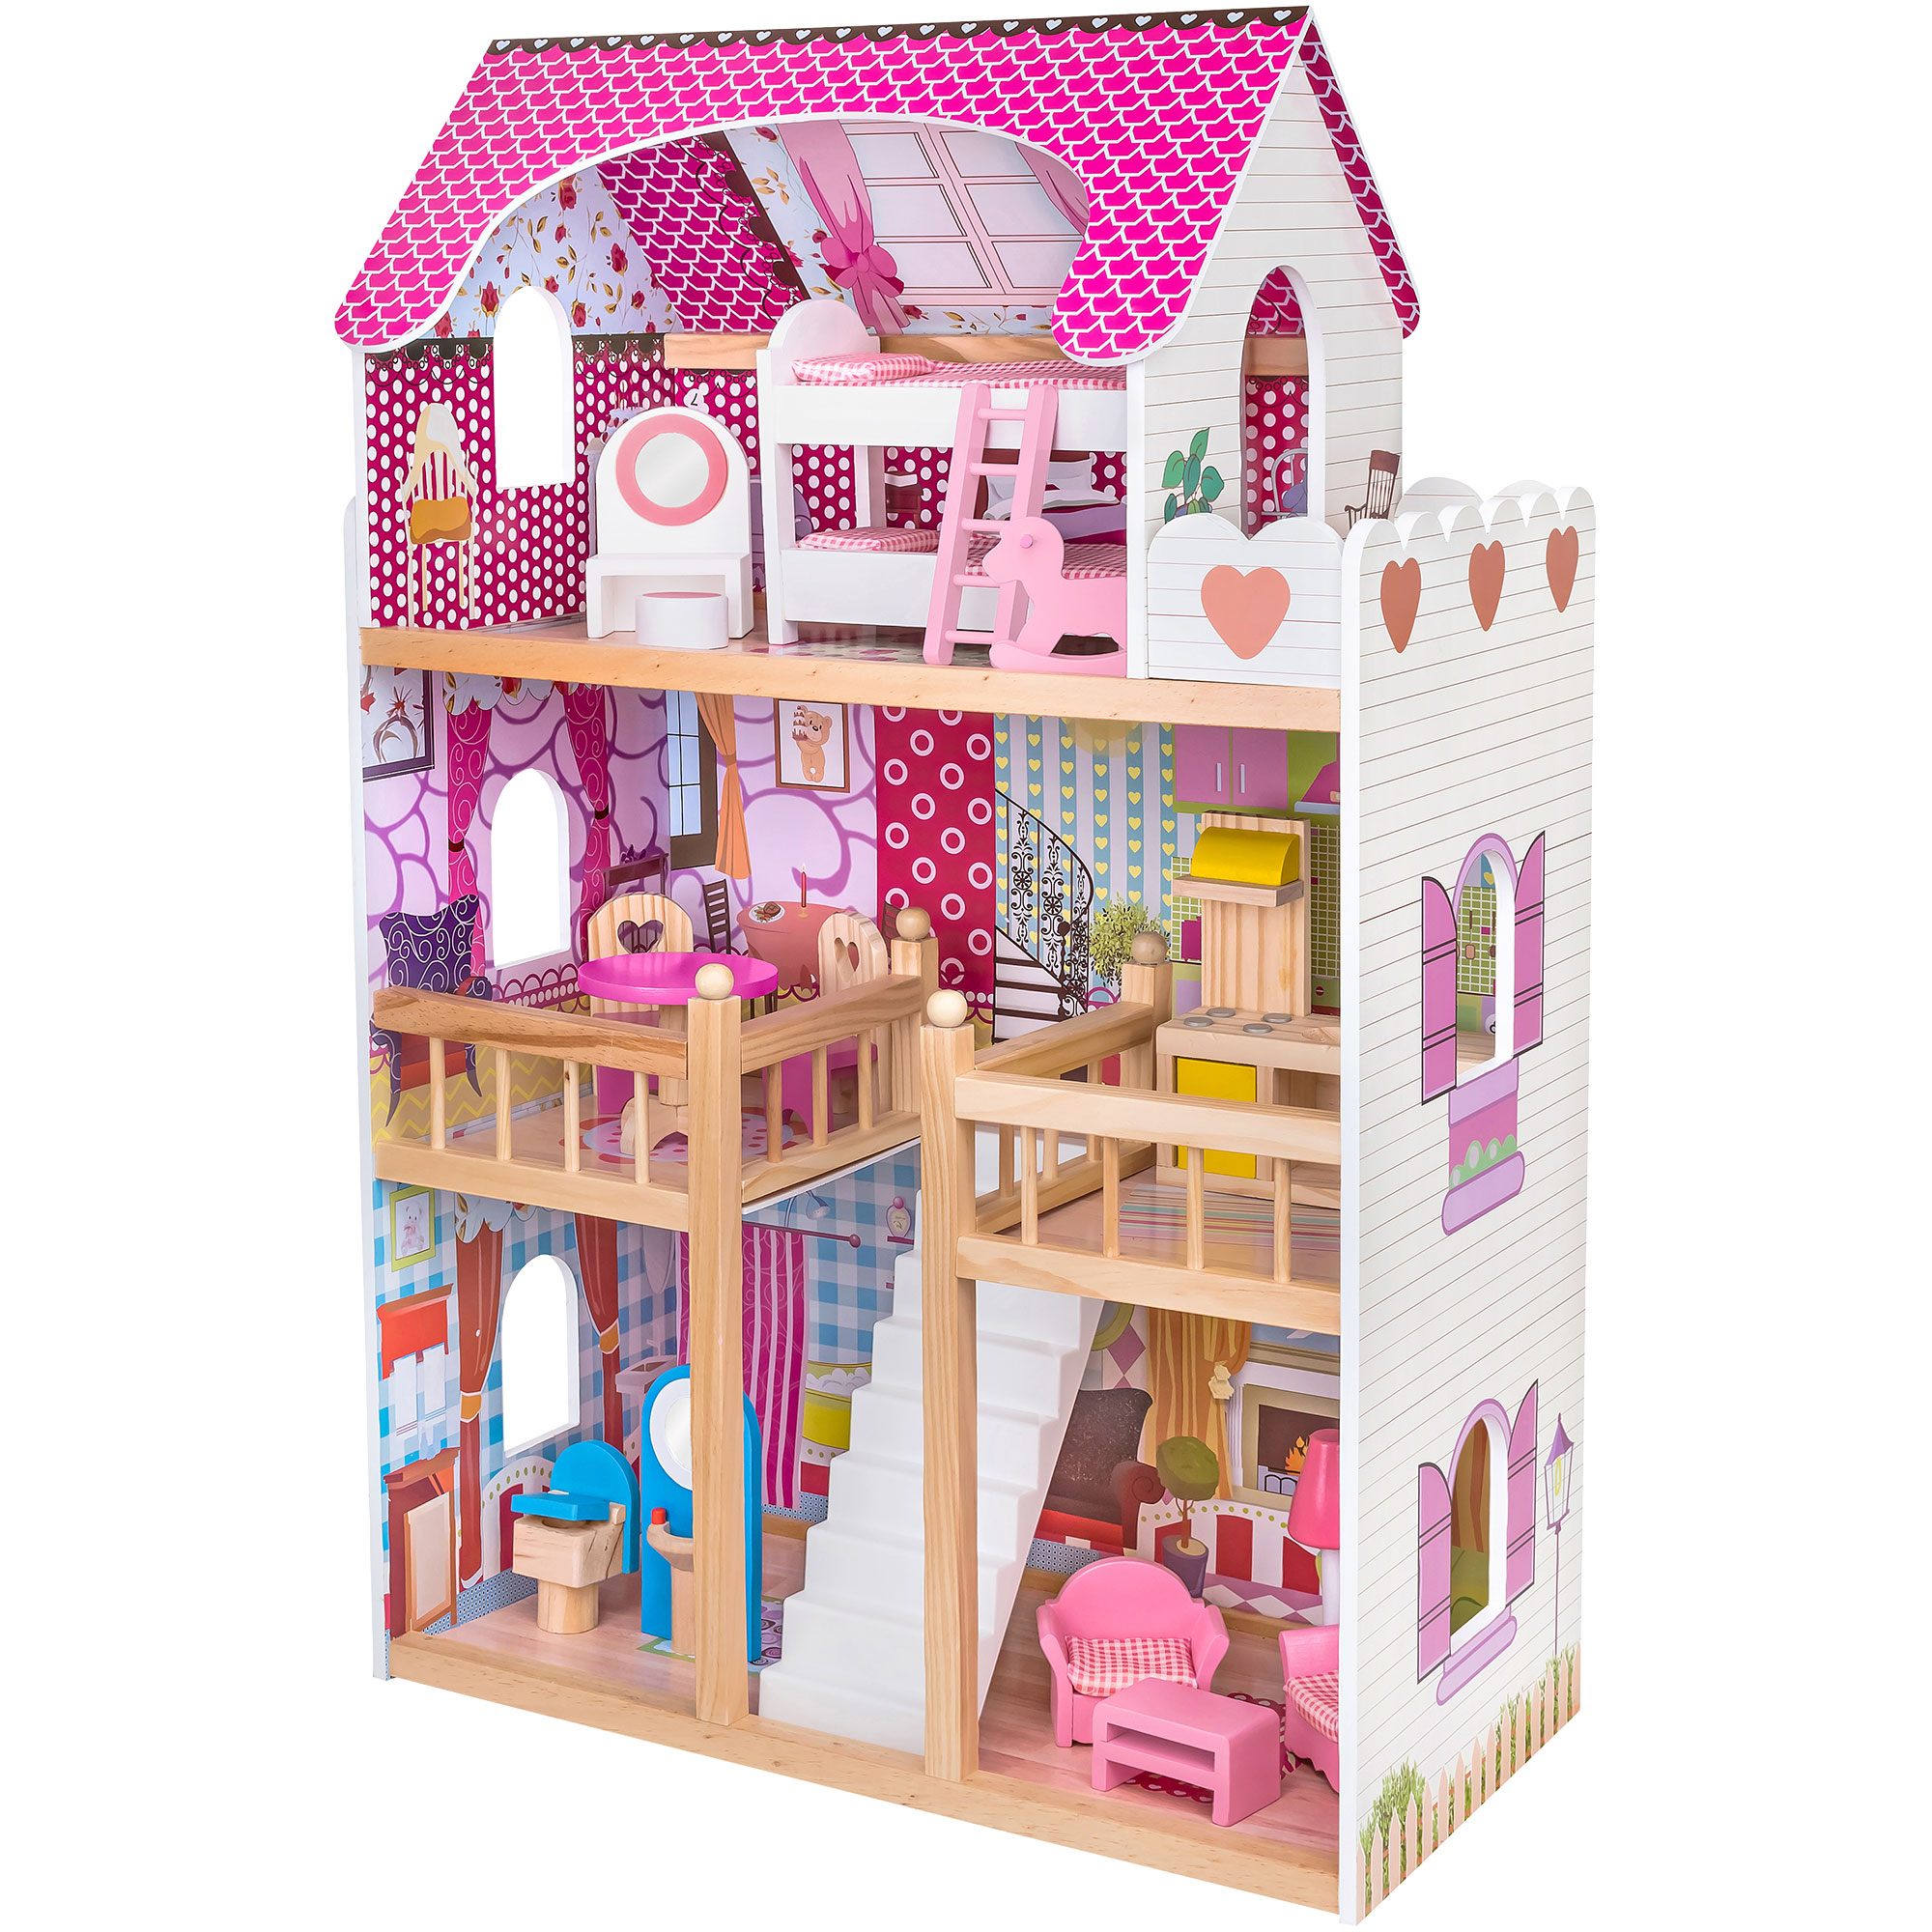 Case delle bambole e mobilio